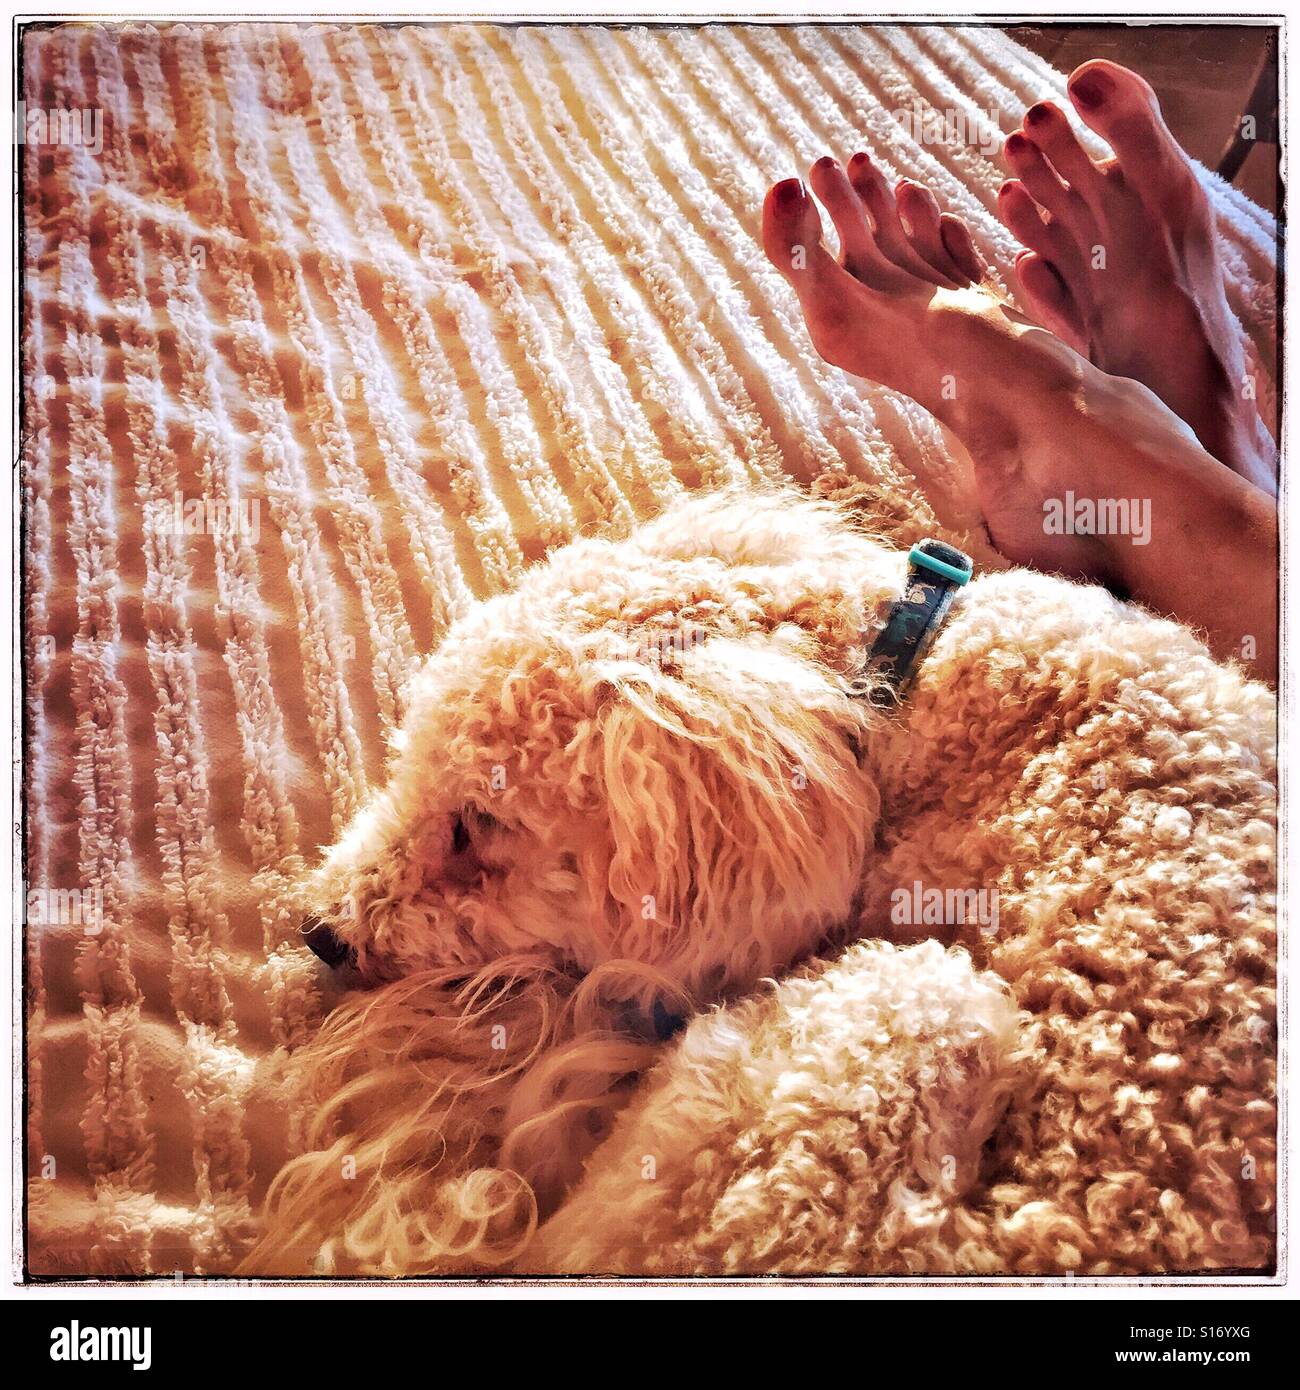 Sonntag ist Ruhetag und am Nachmittag ist die perfekte Zeit für eine Siesta für einen Hund und eine Frau (Fuß sichtbar) dargestellt auf einem Bett entspannen. Stockfoto